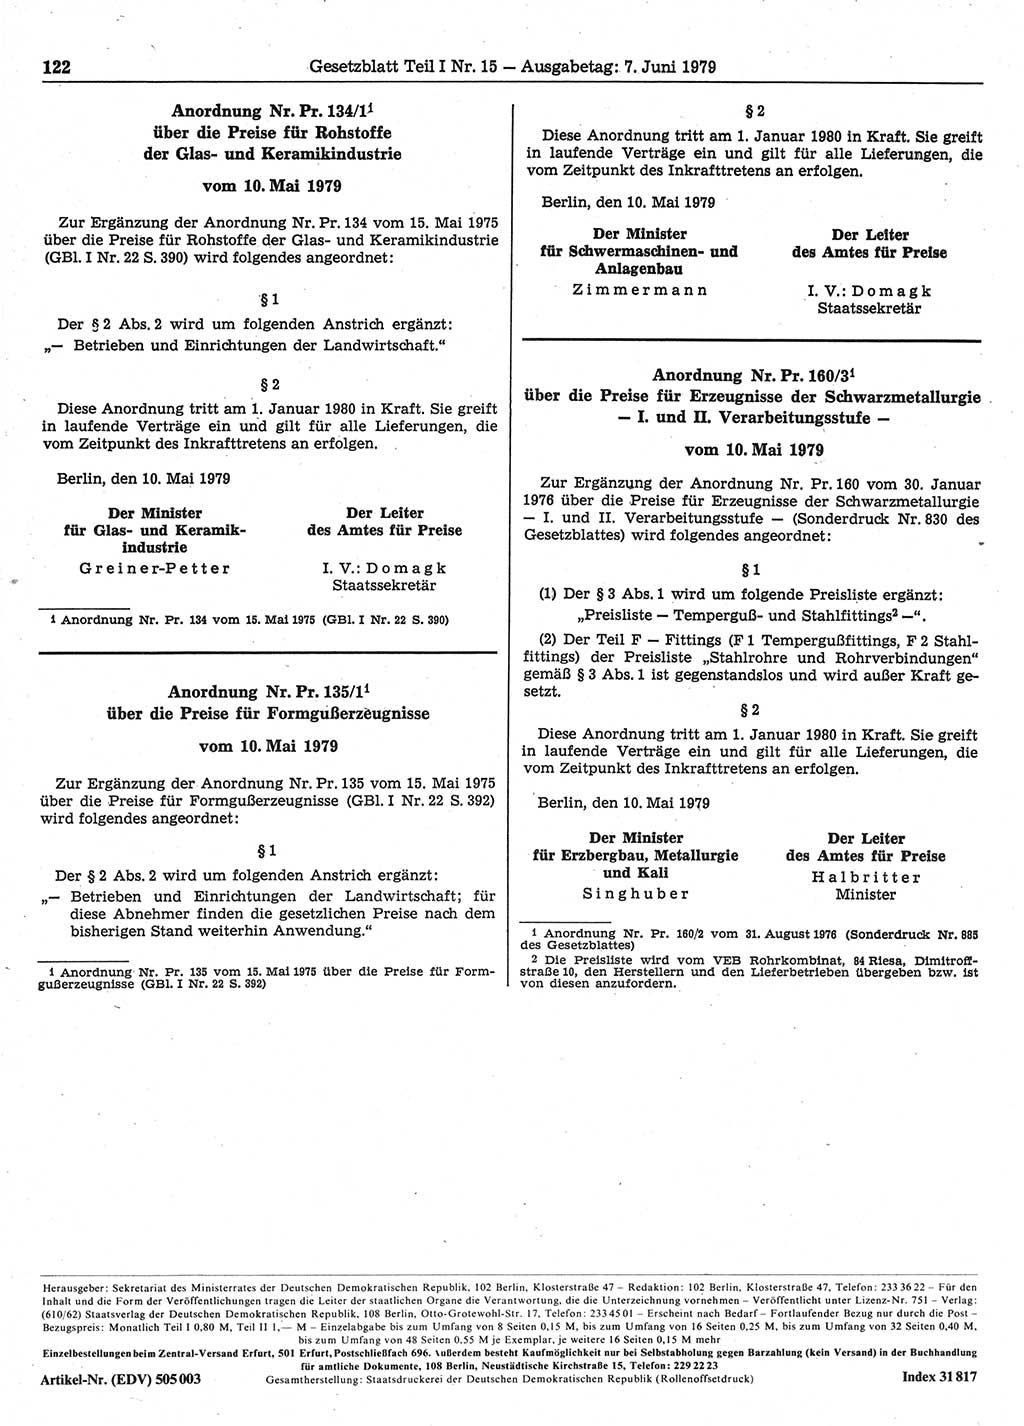 Gesetzblatt (GBl.) der Deutschen Demokratischen Republik (DDR) Teil Ⅰ 1979, Seite 122 (GBl. DDR Ⅰ 1979, S. 122)